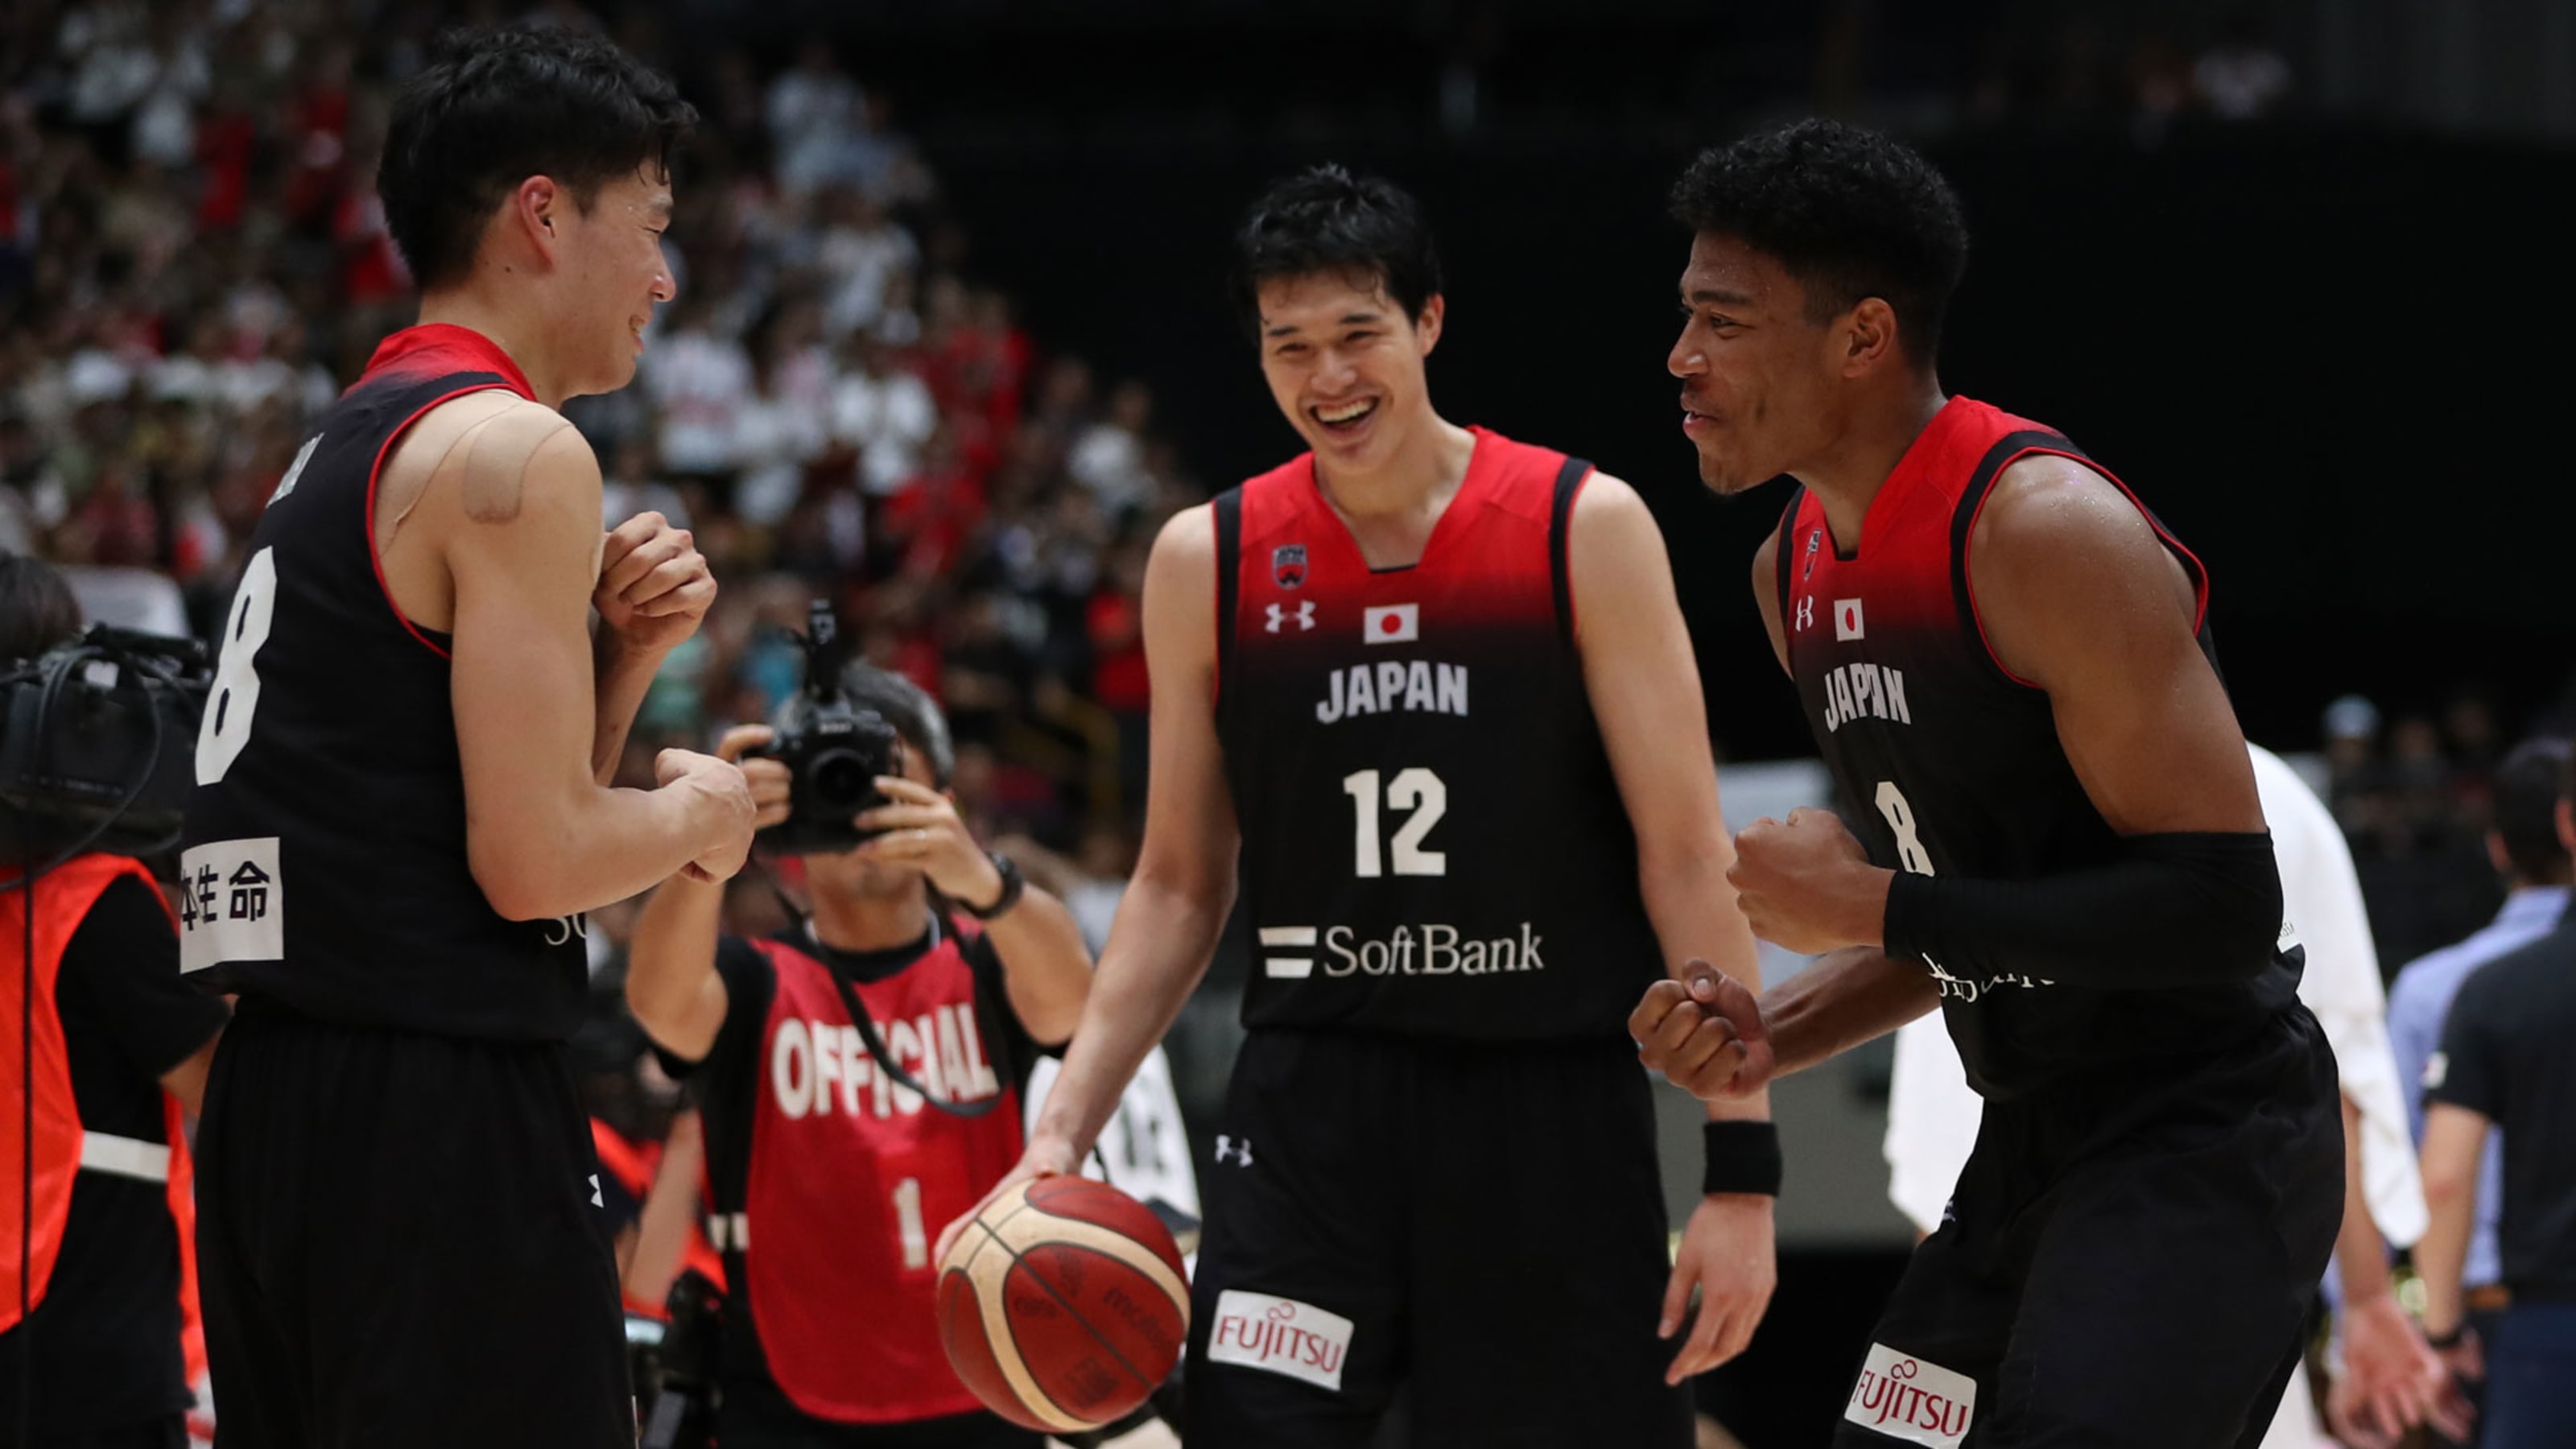 7月16日 日本生命カップバスケットボール男子強化試合 日本vsベルギーの放送予定 八村塁と馬場雄大が合流